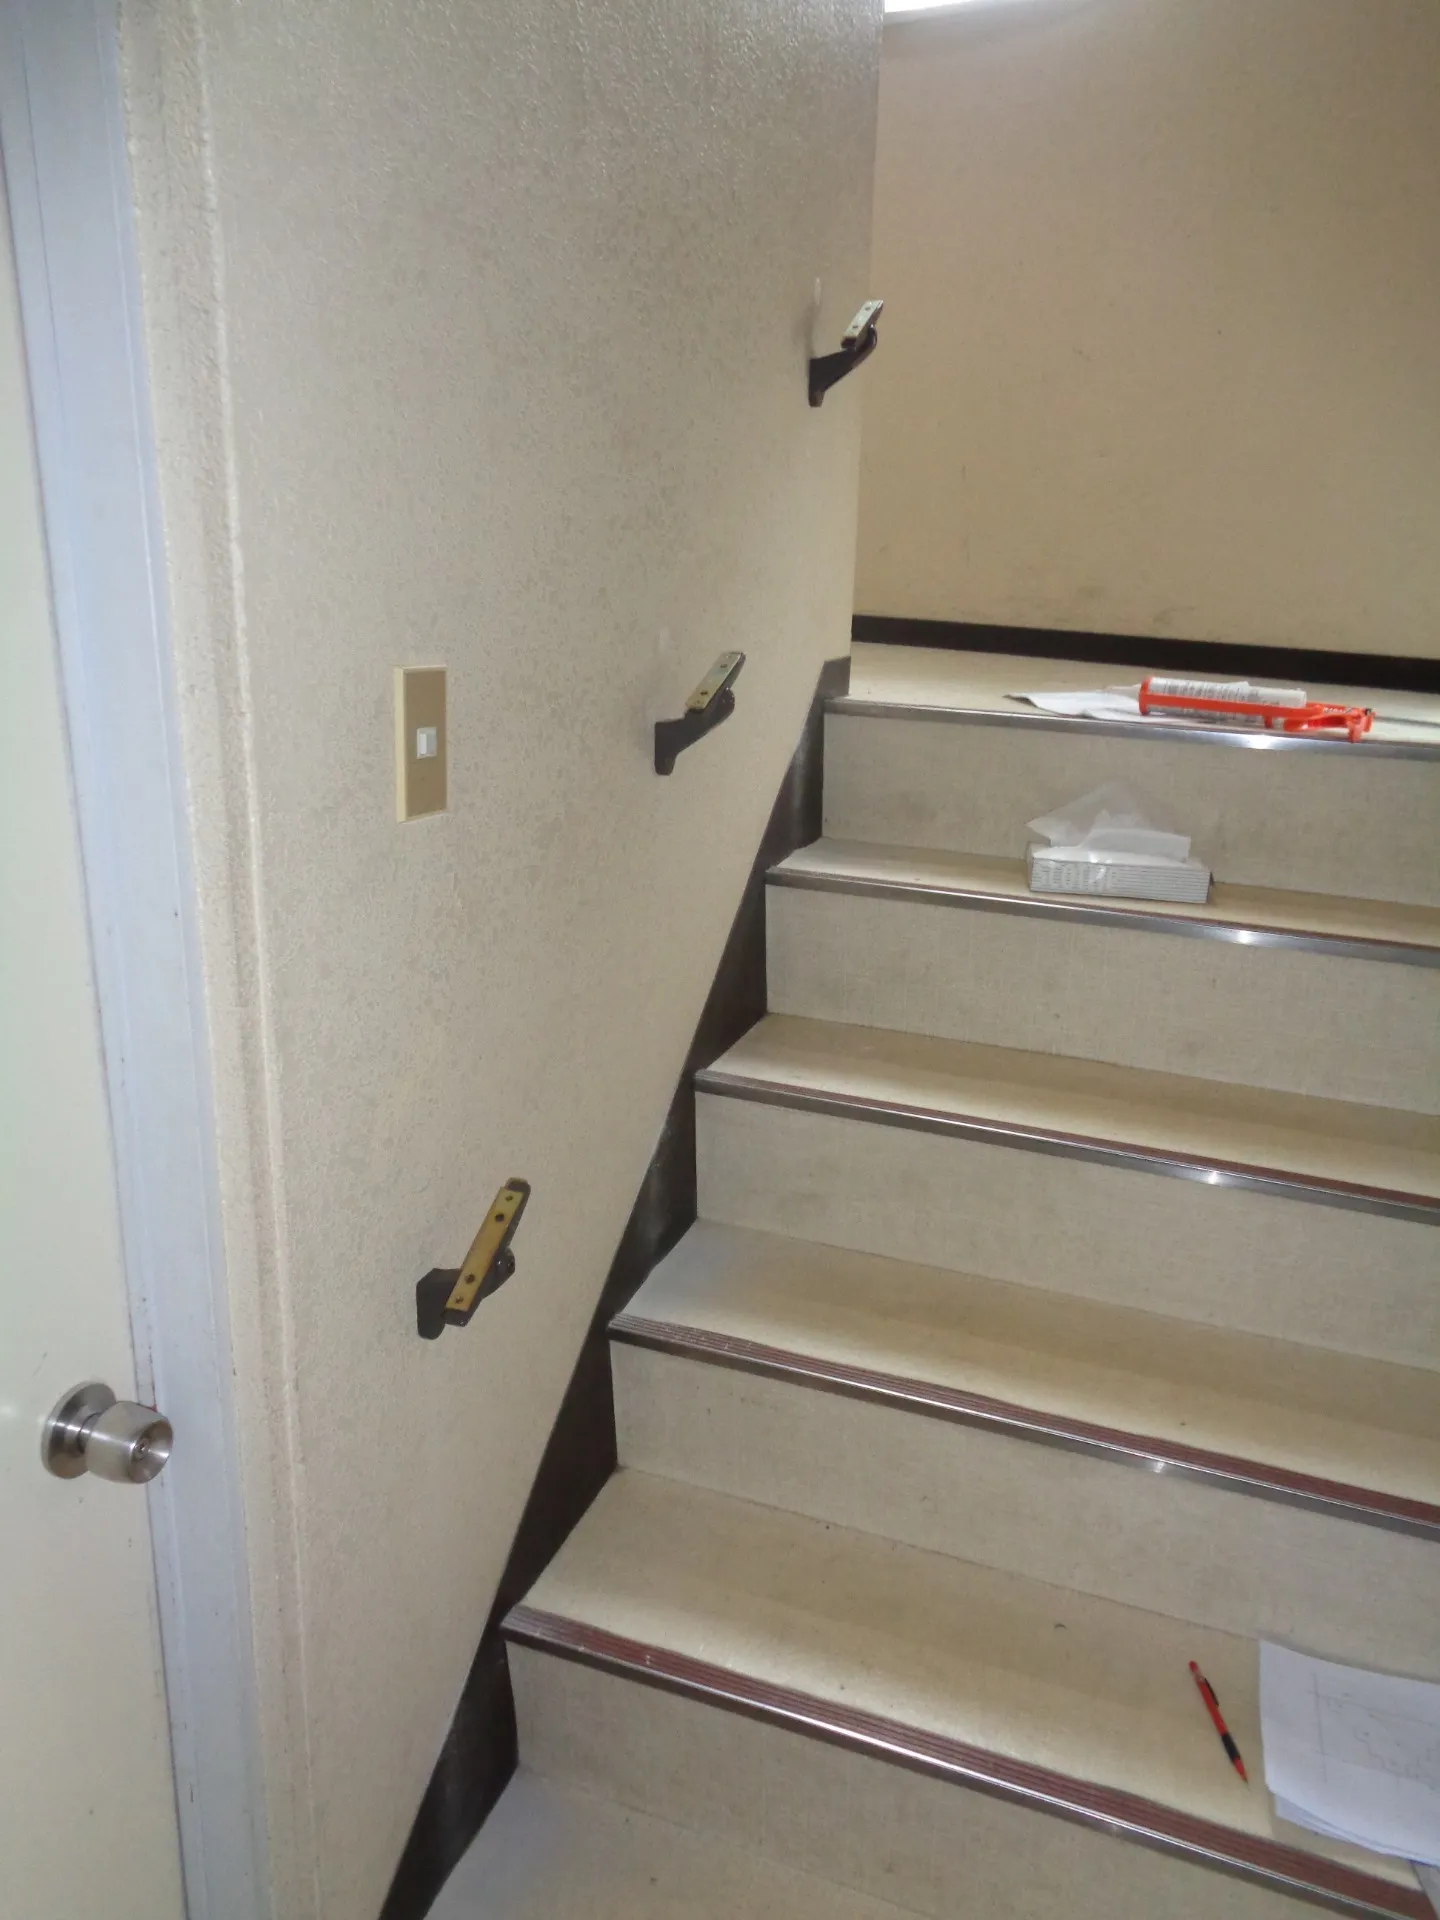 [【名古屋市】事務所の階段に手摺の取付